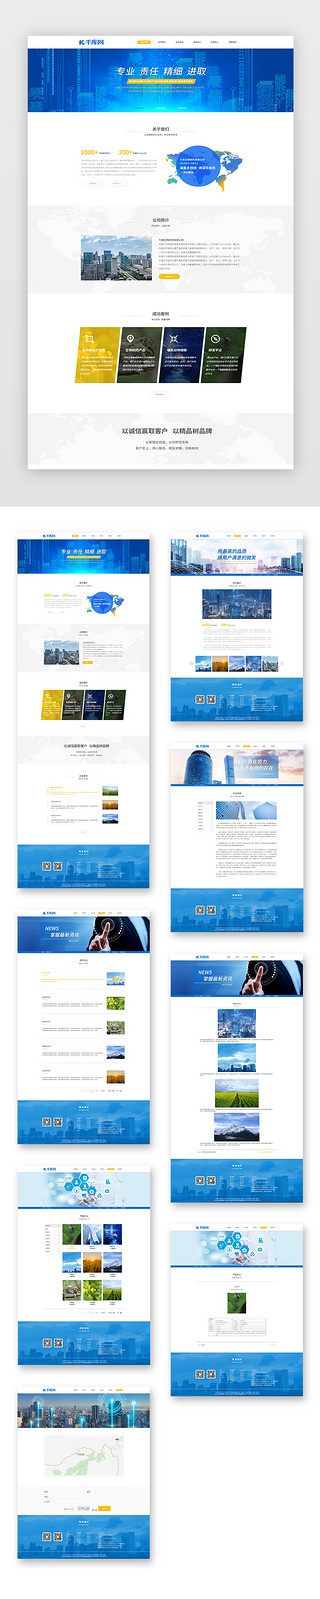 研究汇报UI设计素材_蓝色通用简约生物药物研究企业网站套图